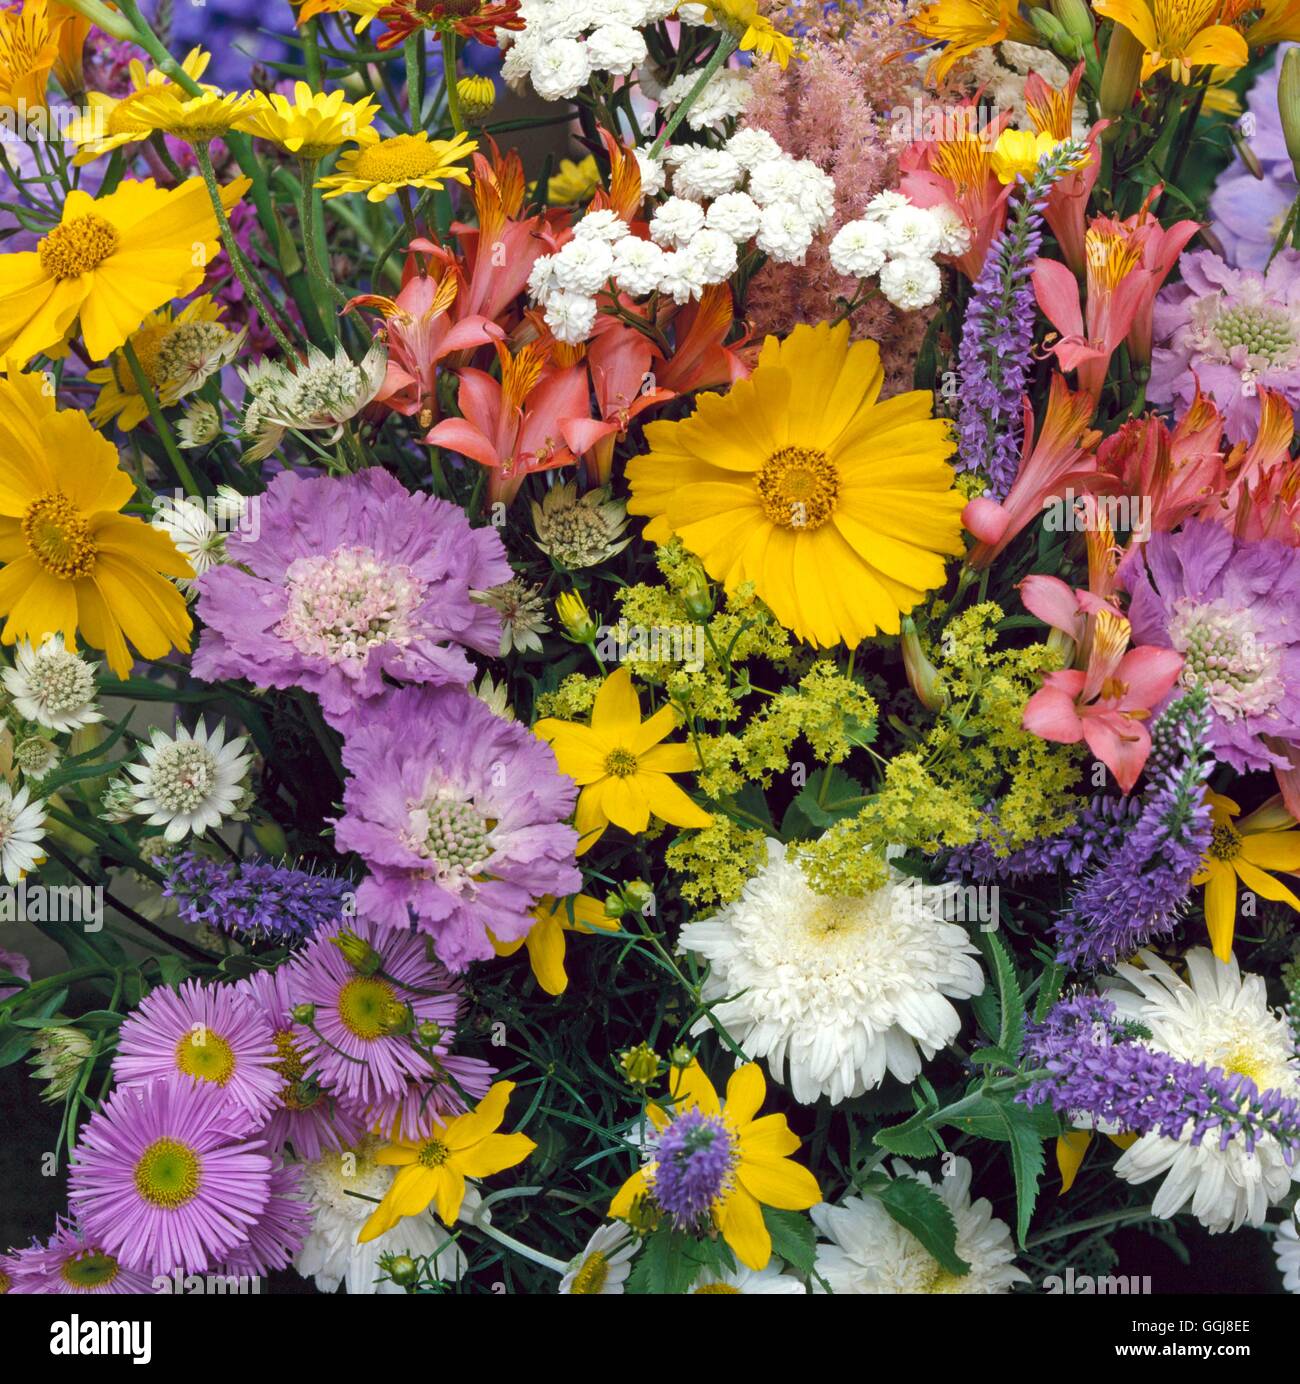 Les arrangements de fleurs coupées/- Vase de plantes vivaces - Aster Scabious Bidens Astrantia Veronica Coreopsis Achillea Leucan Banque D'Images